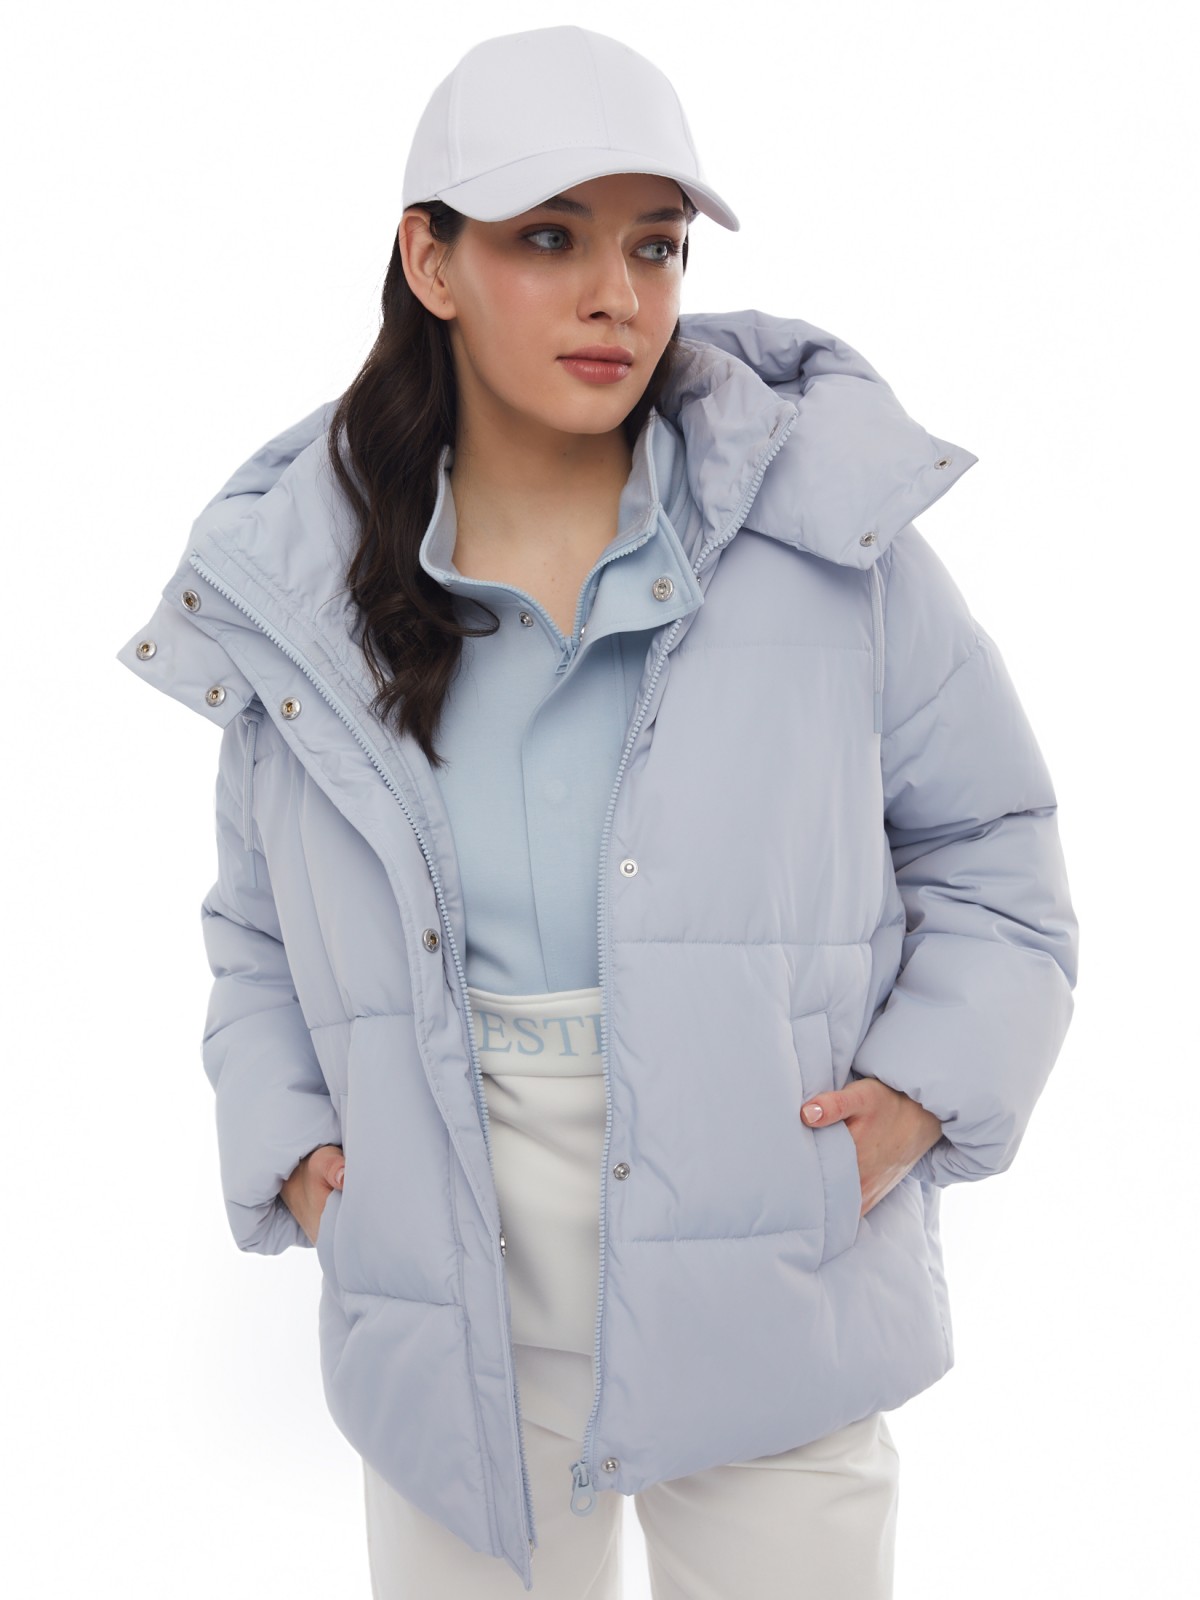 Тёплая укороченная дутая куртка с капюшоном zolla 024125112434, цвет светло-голубой, размер XS - фото 1